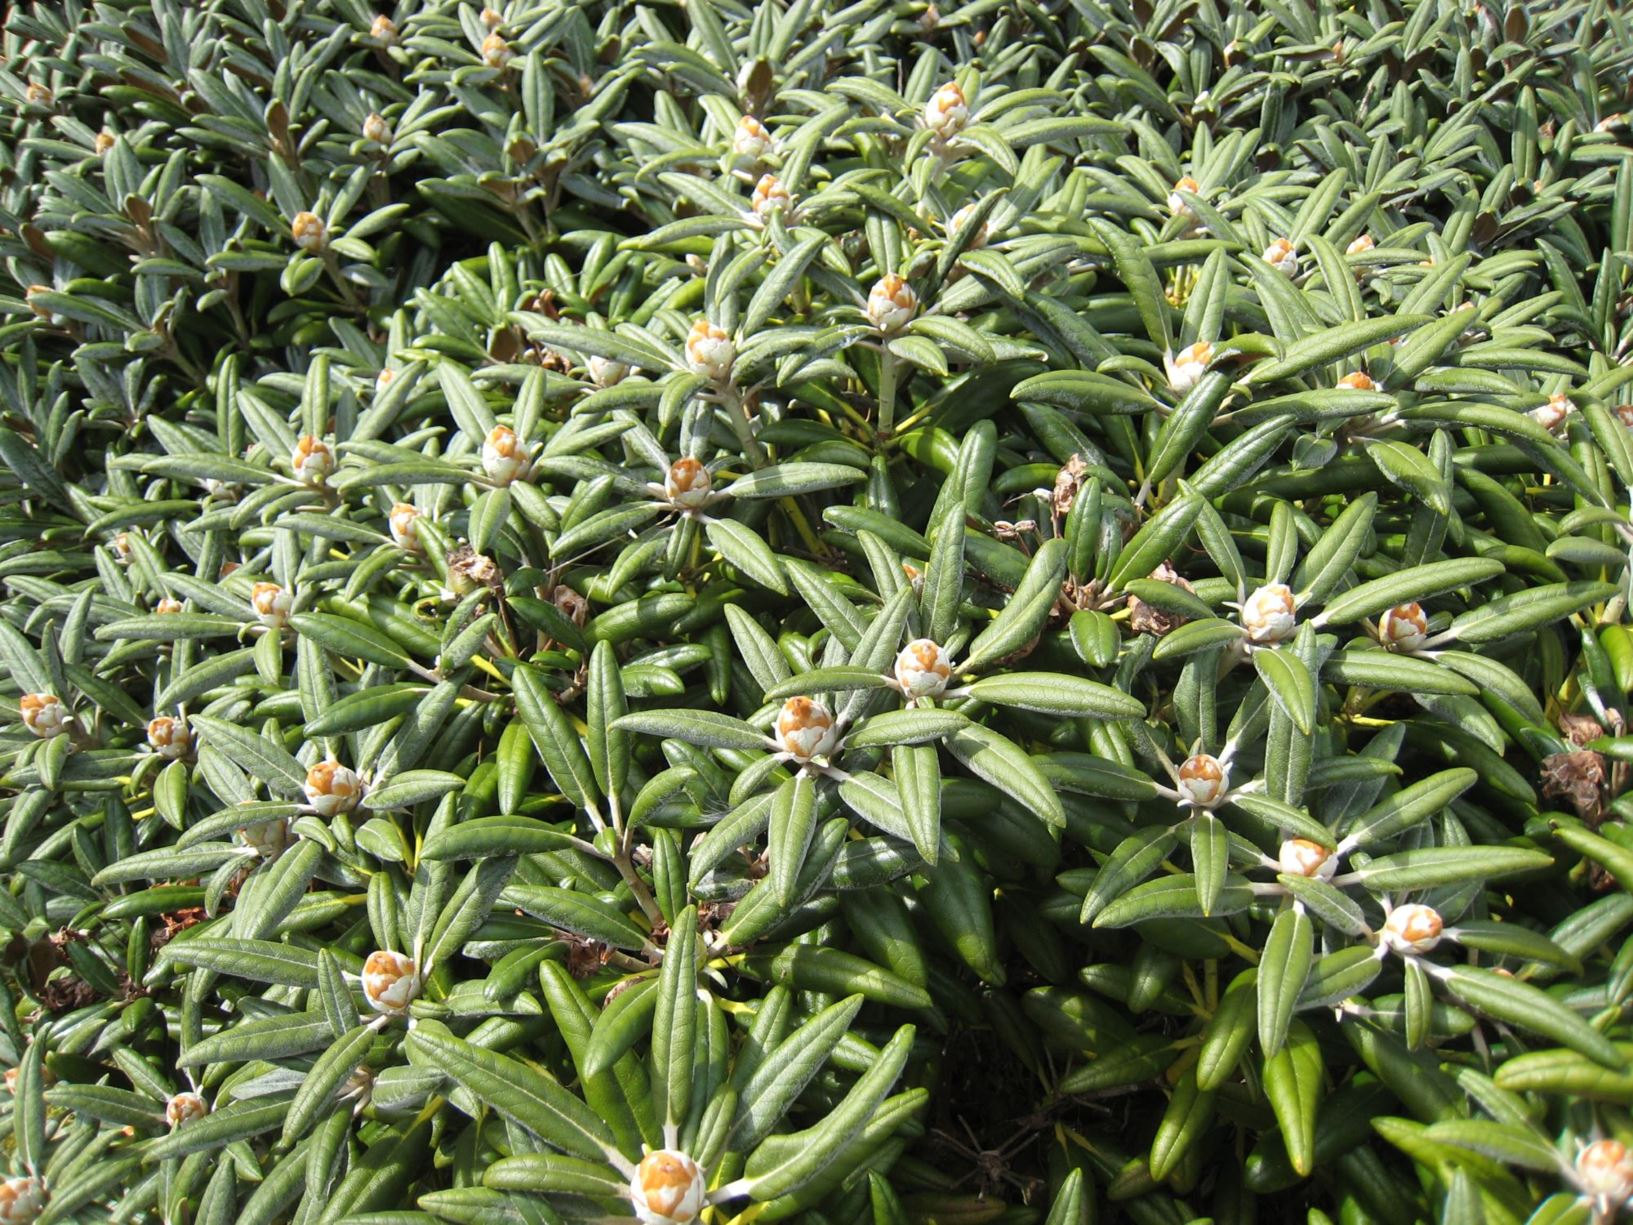 Rhododendron yakushimanum 'Koichiro Wada'